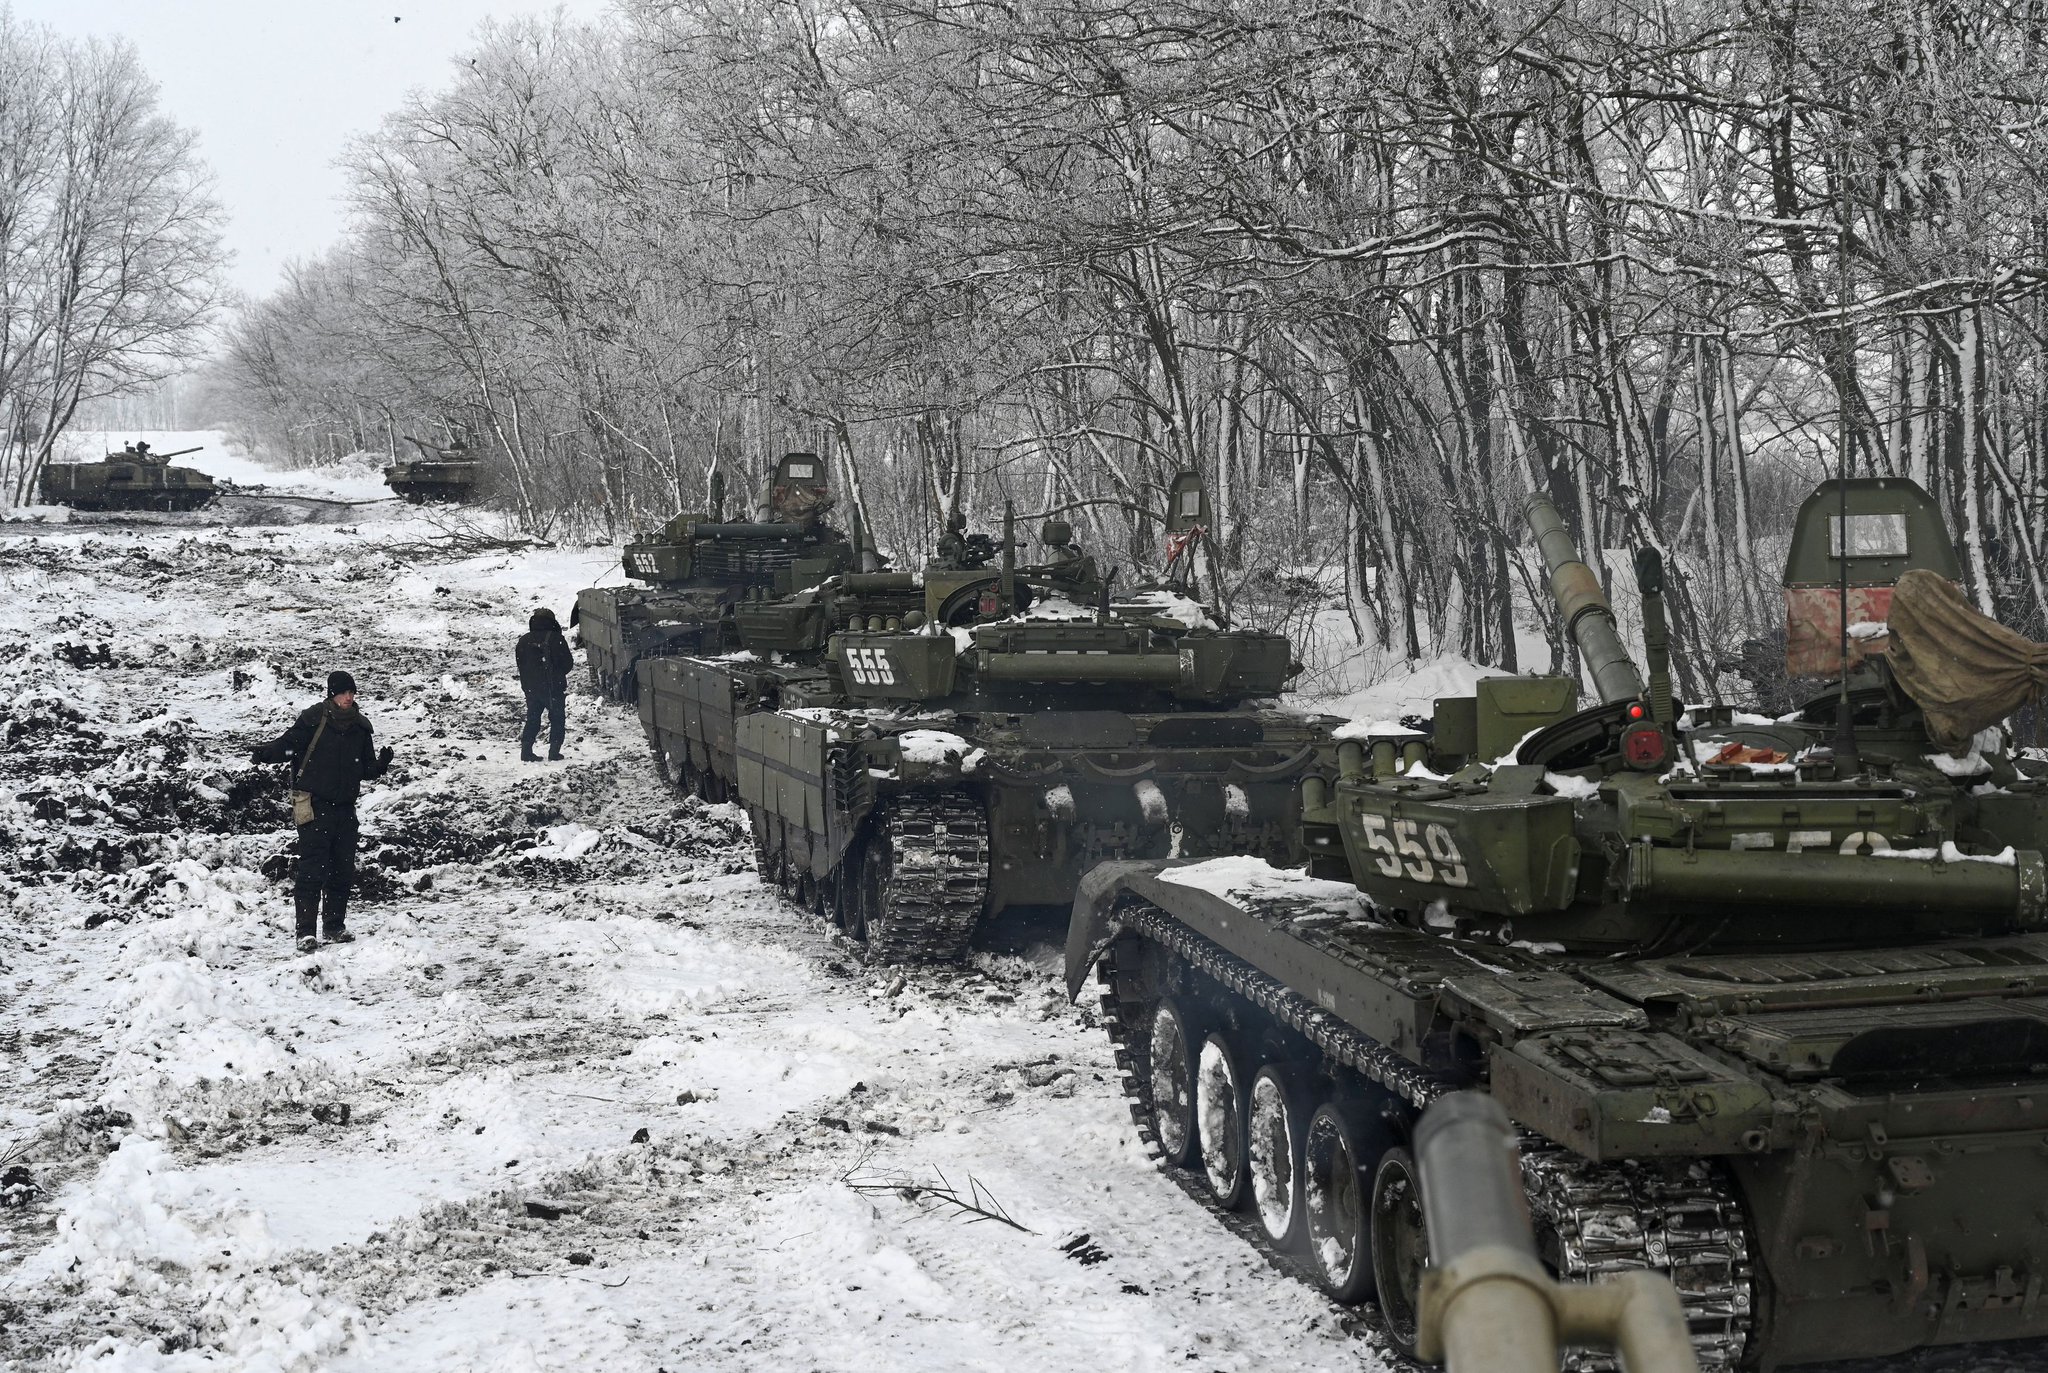 Análise: Nova guerra fria esquenta com escalada da crise ucraniana